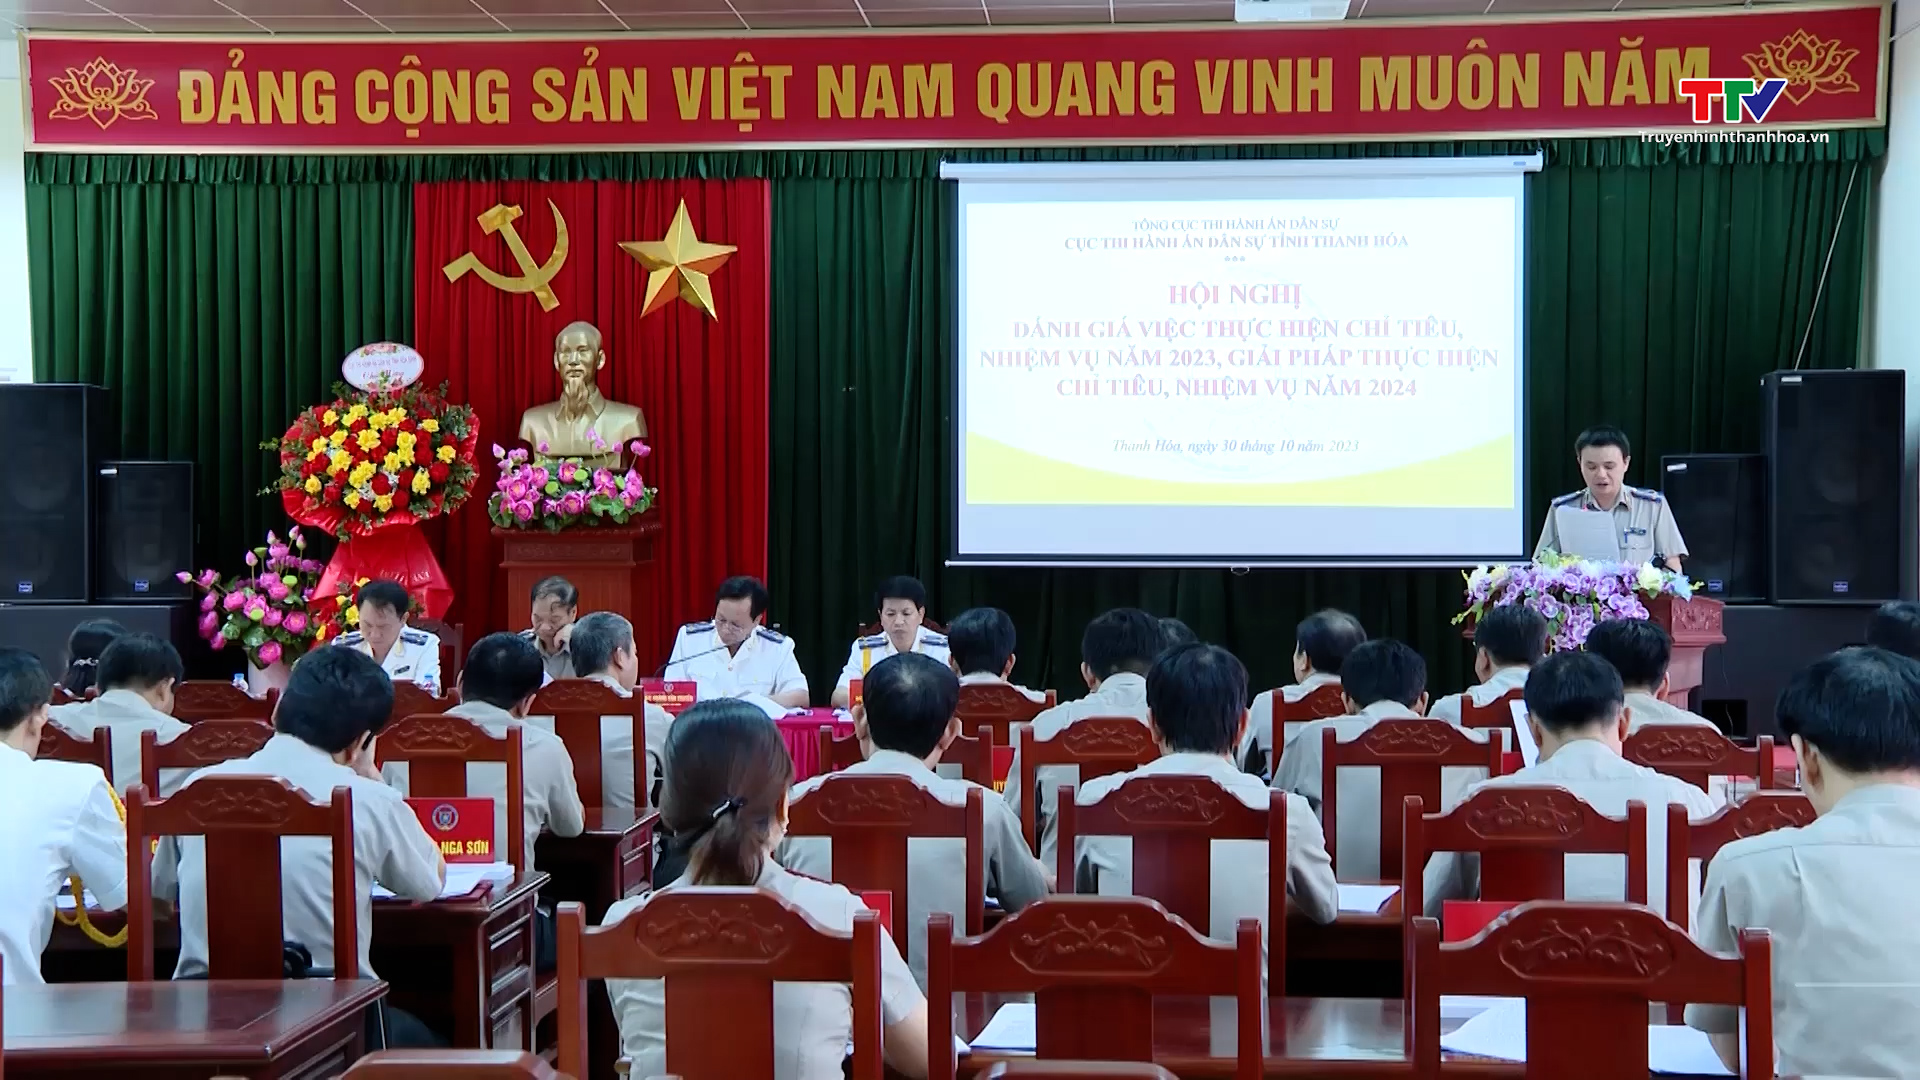 Công tác thi hành án dân sự tỉnh Thanh Hoá đạt và vượt  nhiều chỉ tiêu, nhiệm vụ năm 2023  - Ảnh 1.